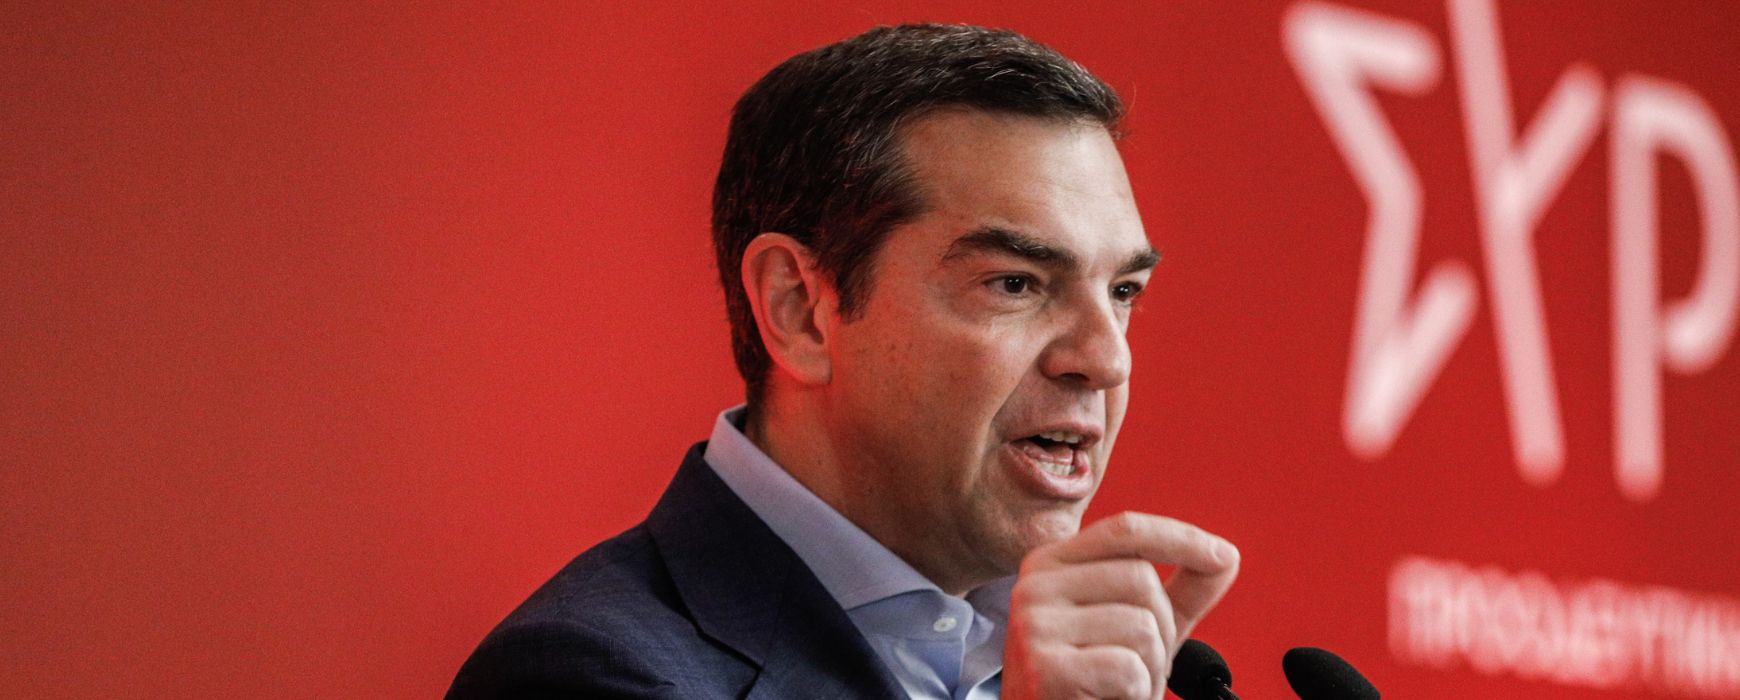 Τσίπρας: Νίκη του ΣΥΡΙΖΑ για προοδευτική πολιτική αλλαγή και σταθερότητα – Παππάς, Γαβρίλης και Παχατουρίδης υποψήφιοι στις Αυτοδιοικητικές